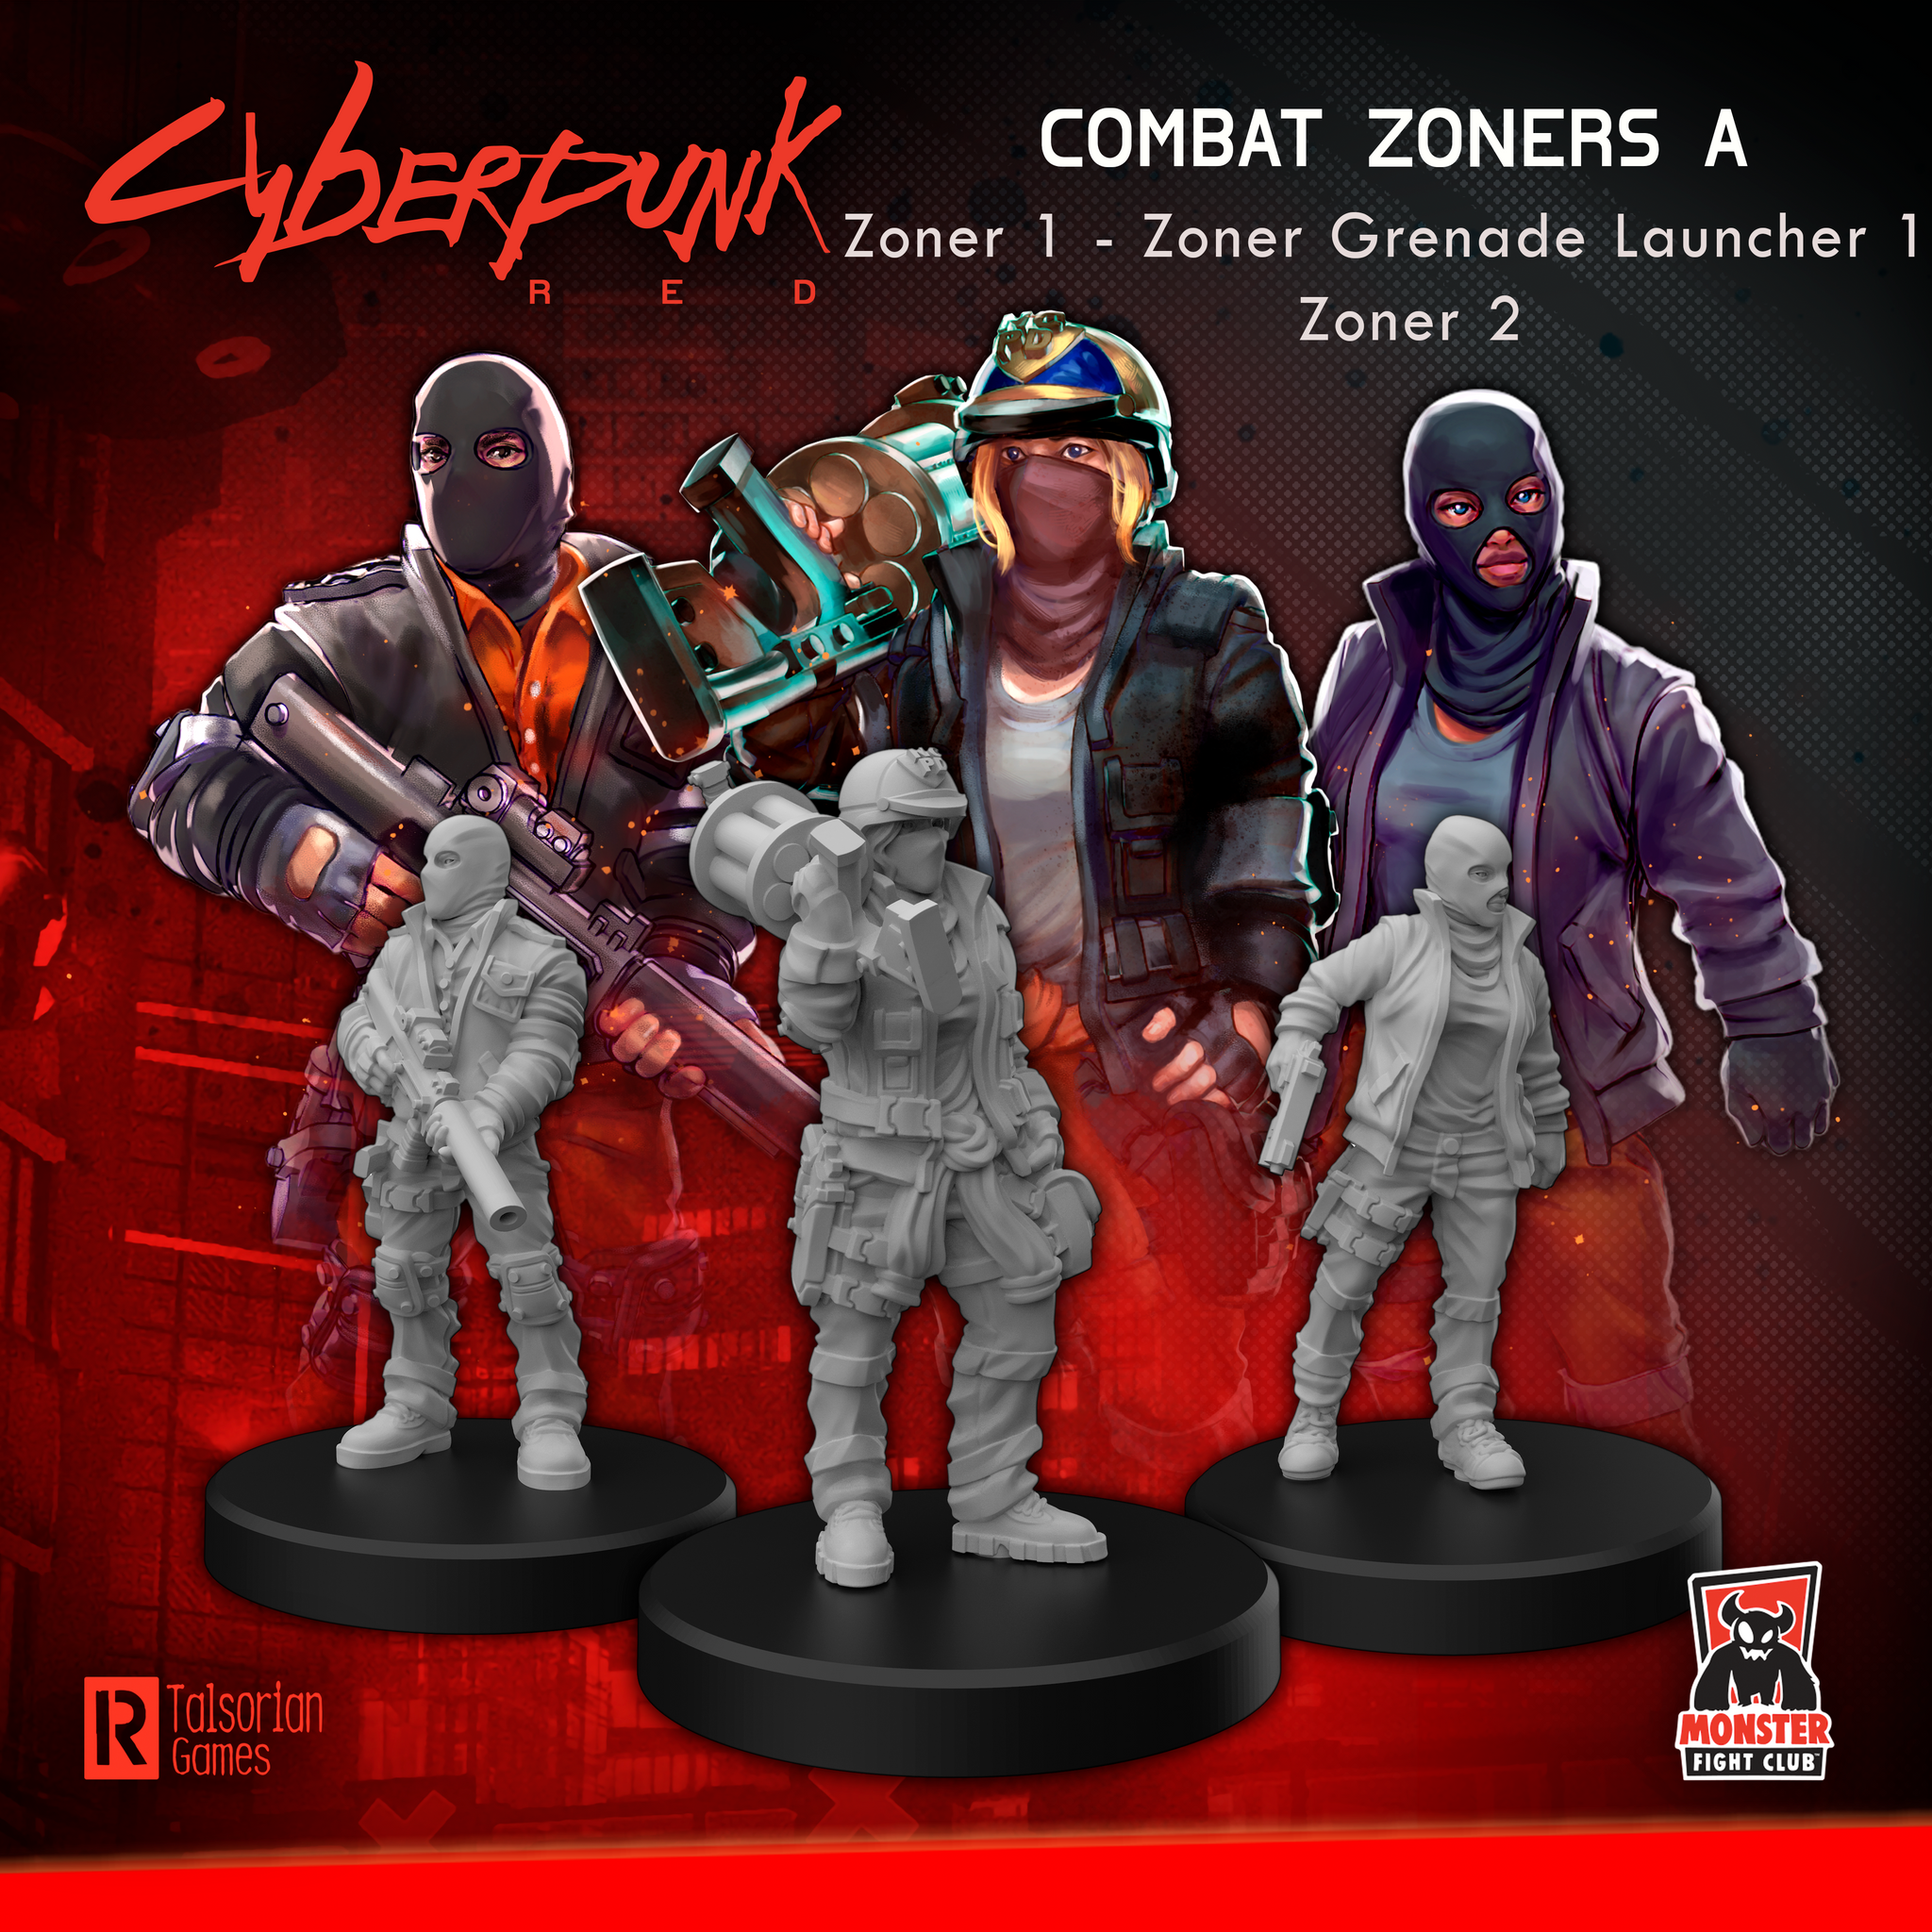 Cyberpunk RED - Combat Zoners A